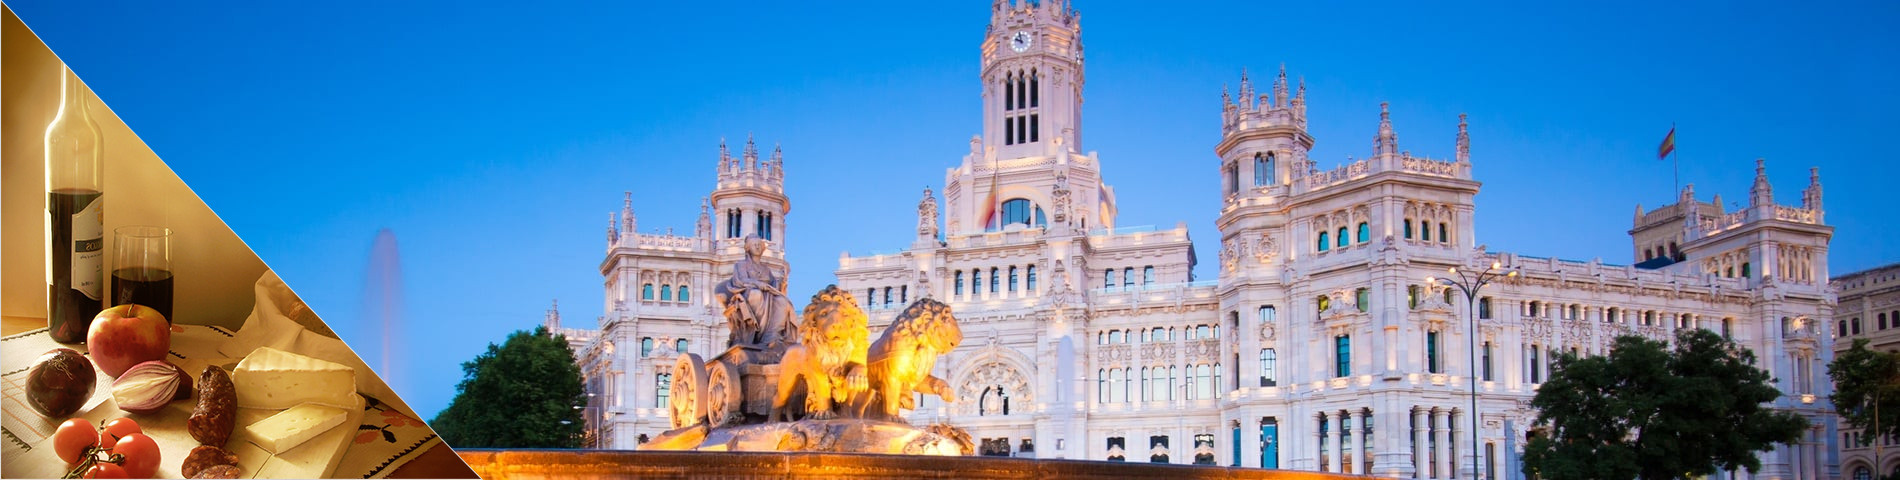 Madrid - Spansk & Kultur